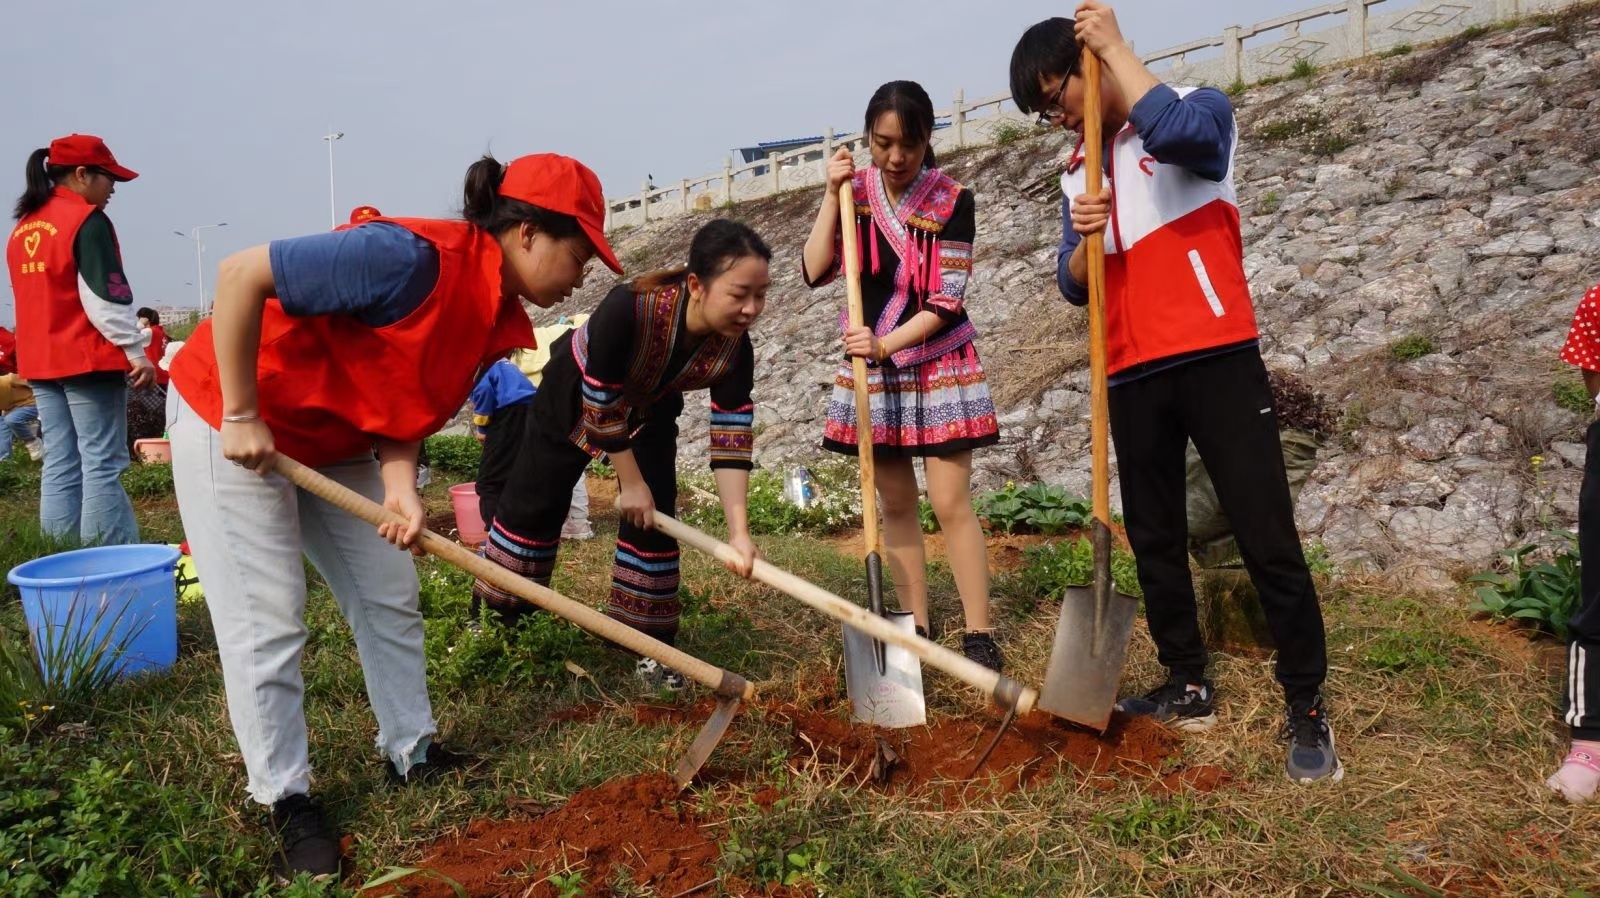 团县委组织青年团员、少数民族代表、青年志愿者植树活动411 / 作者:水墨茶江 / 帖子ID:293557